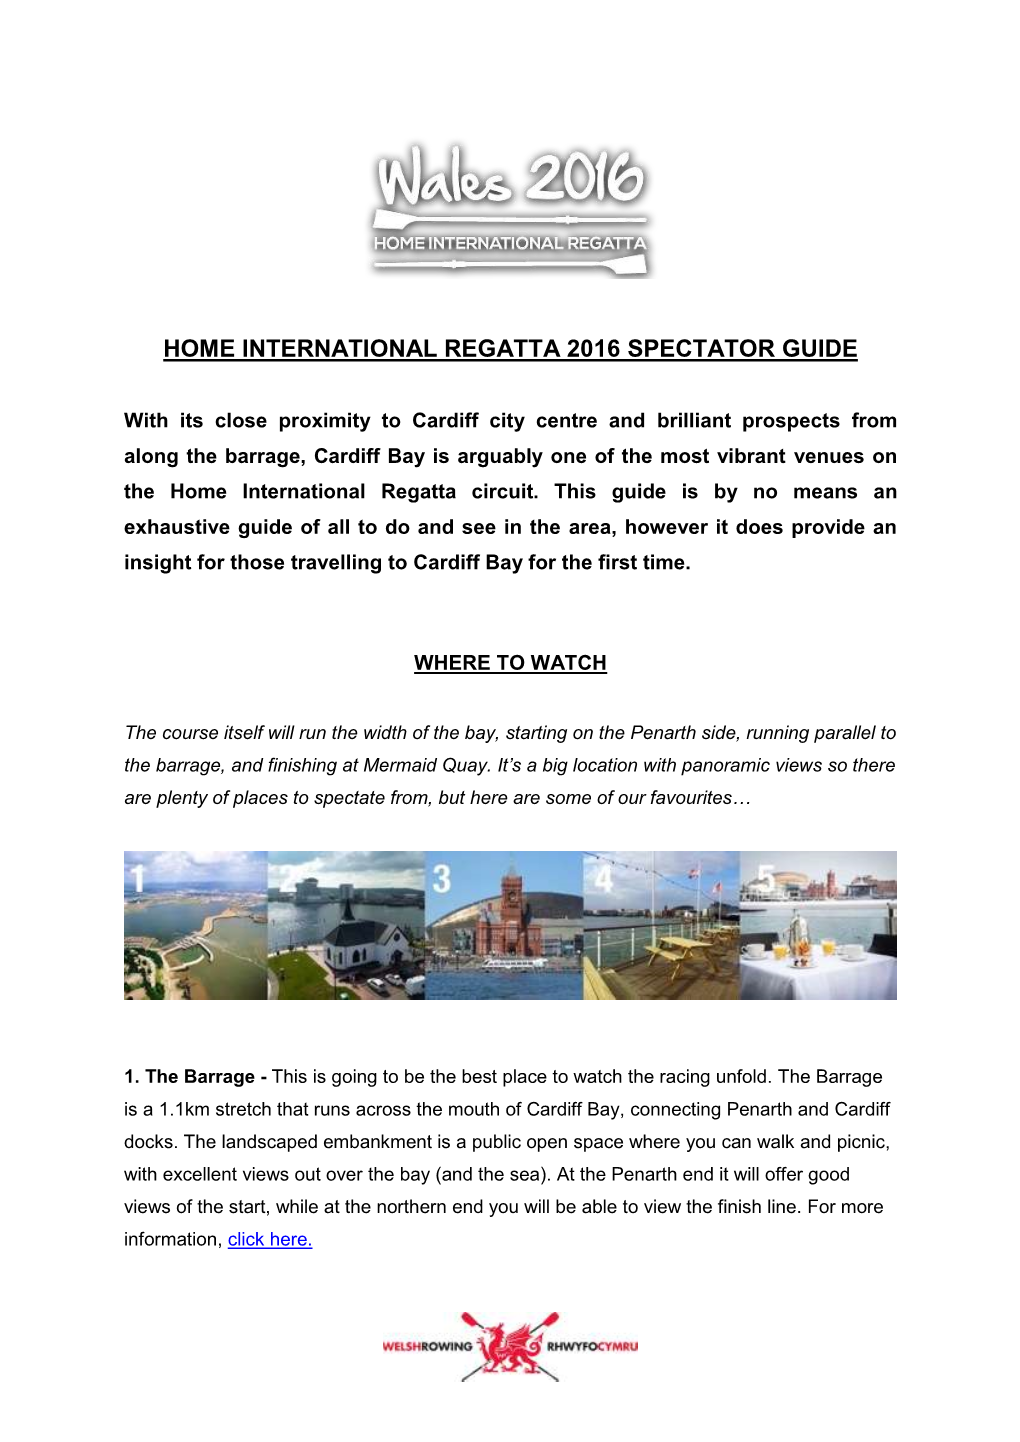 Home International Regatta 2016 Spectator Guide